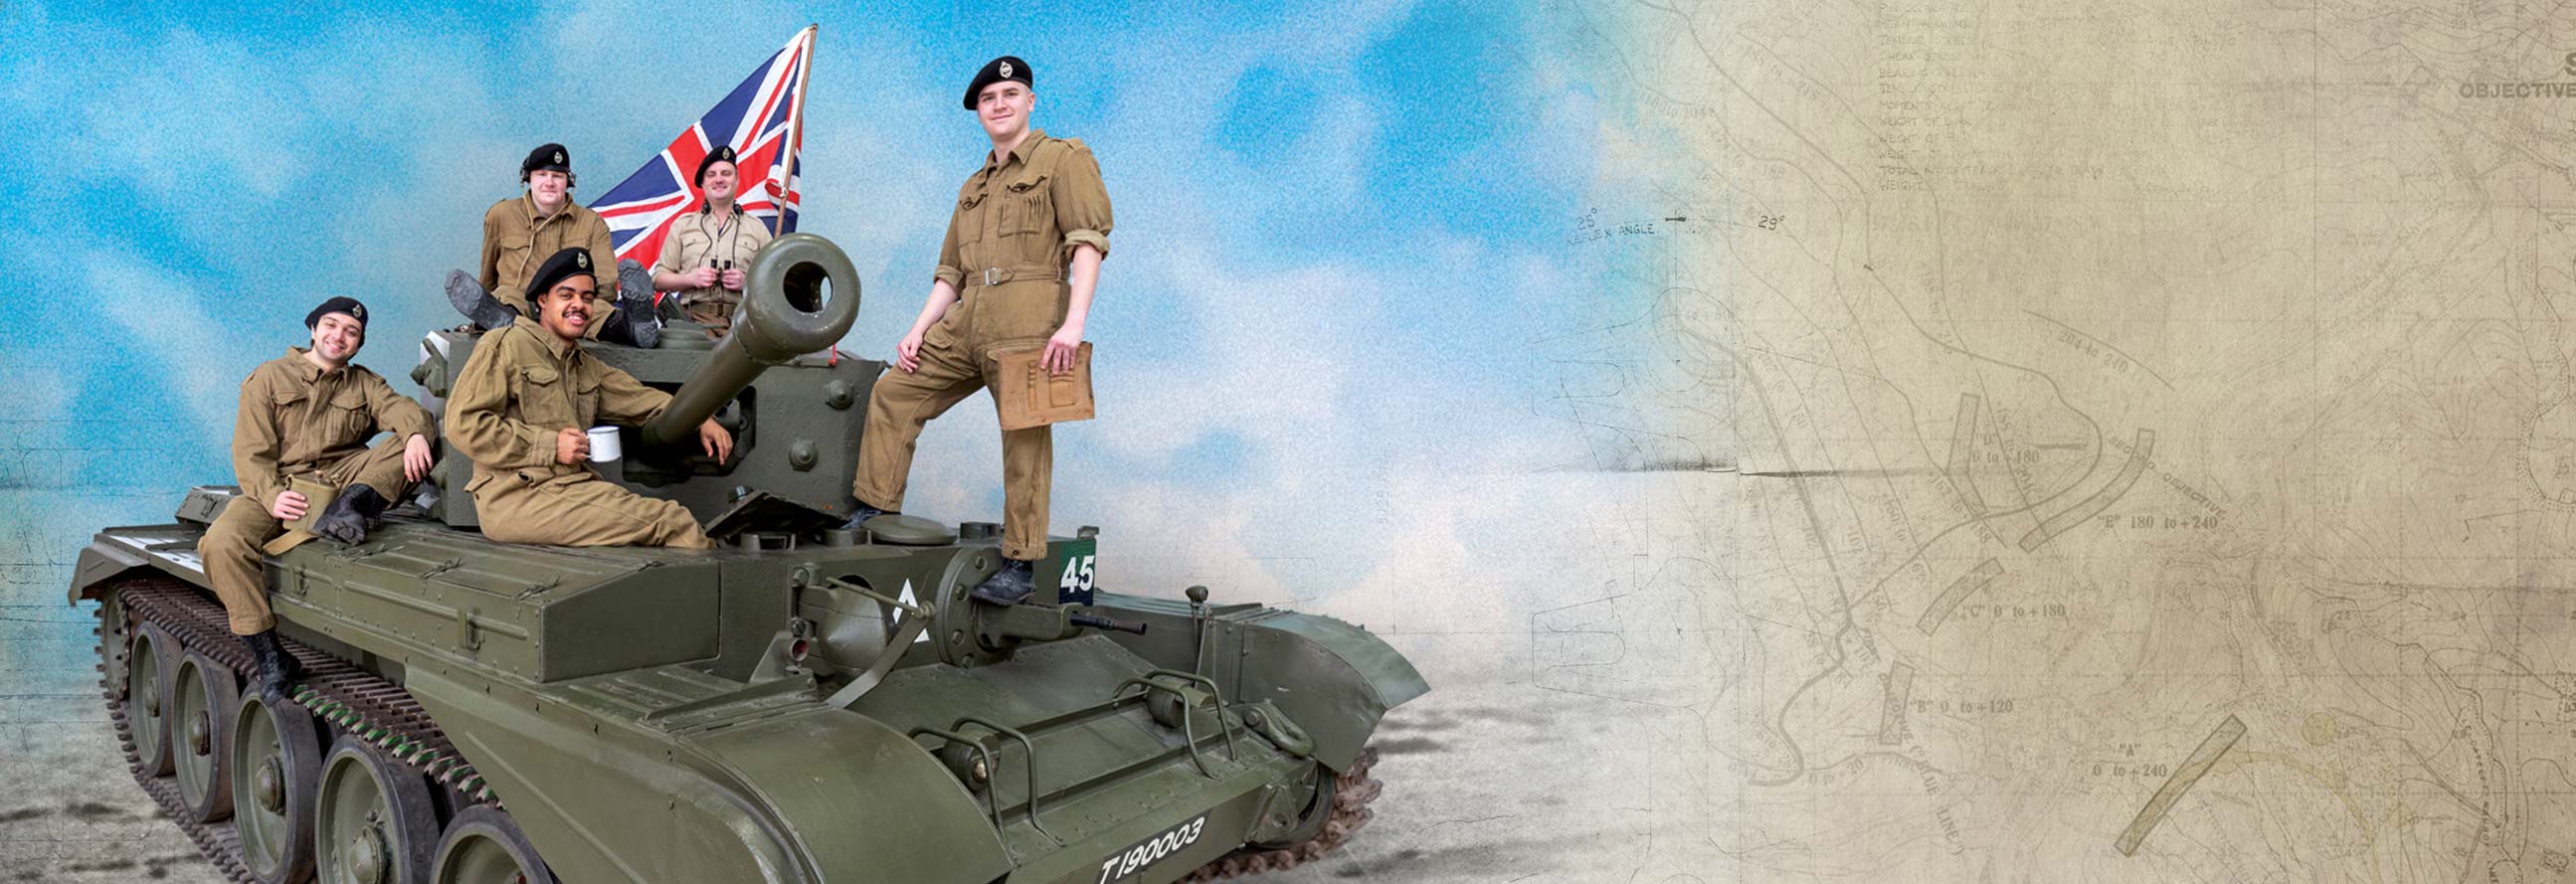 Tank Museum hero image